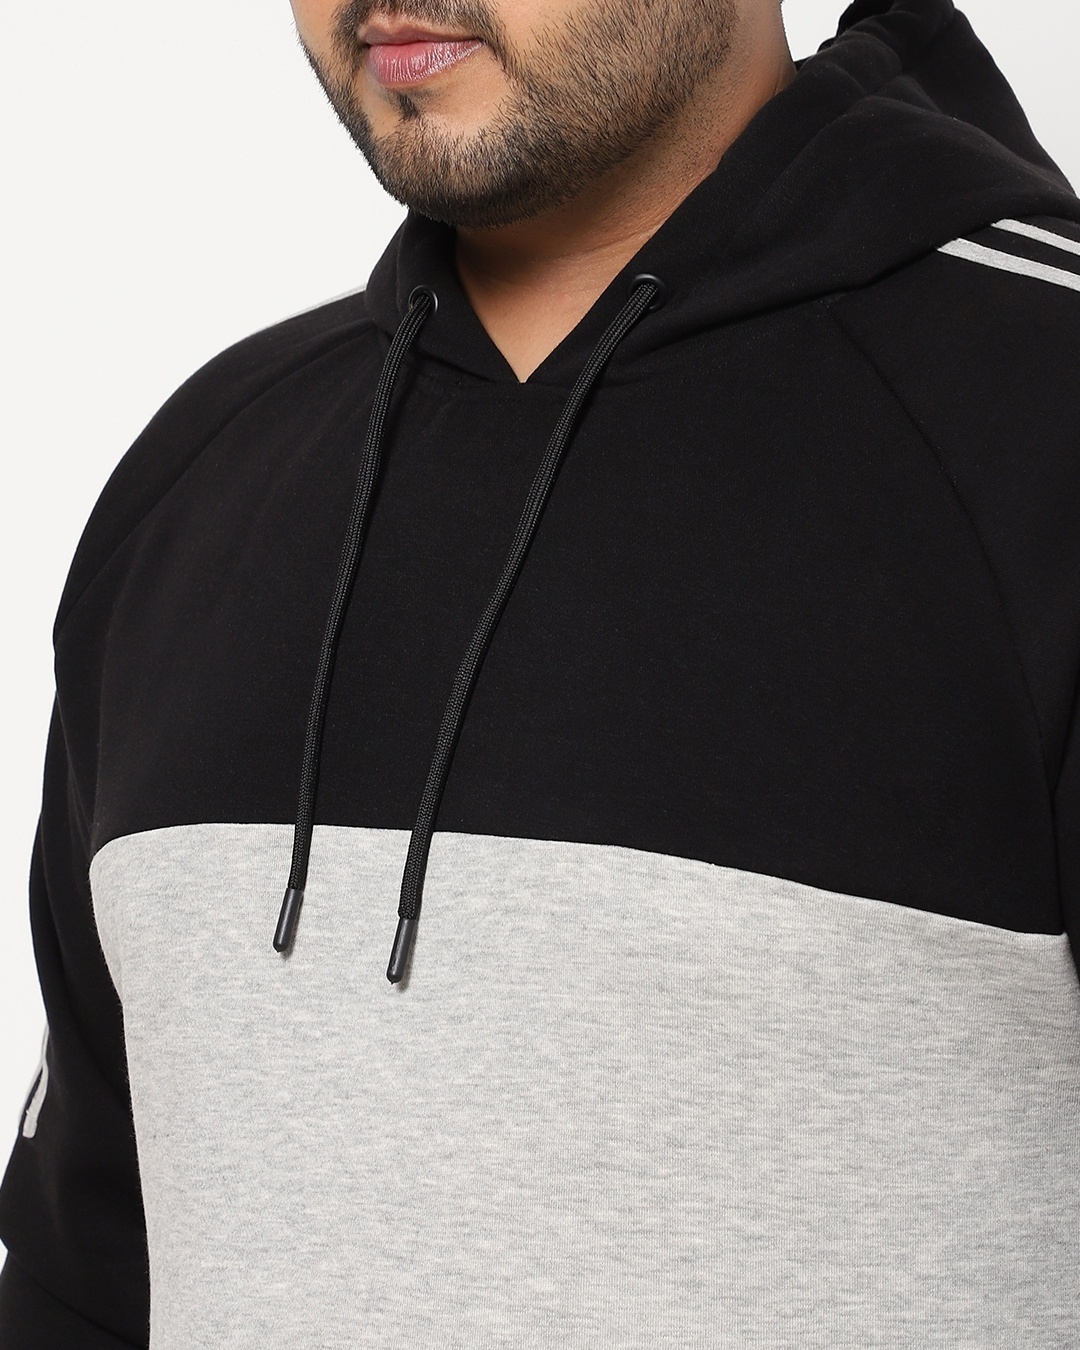 Shop Black-White Plus Size Color Block Hoodie Sweatshirt